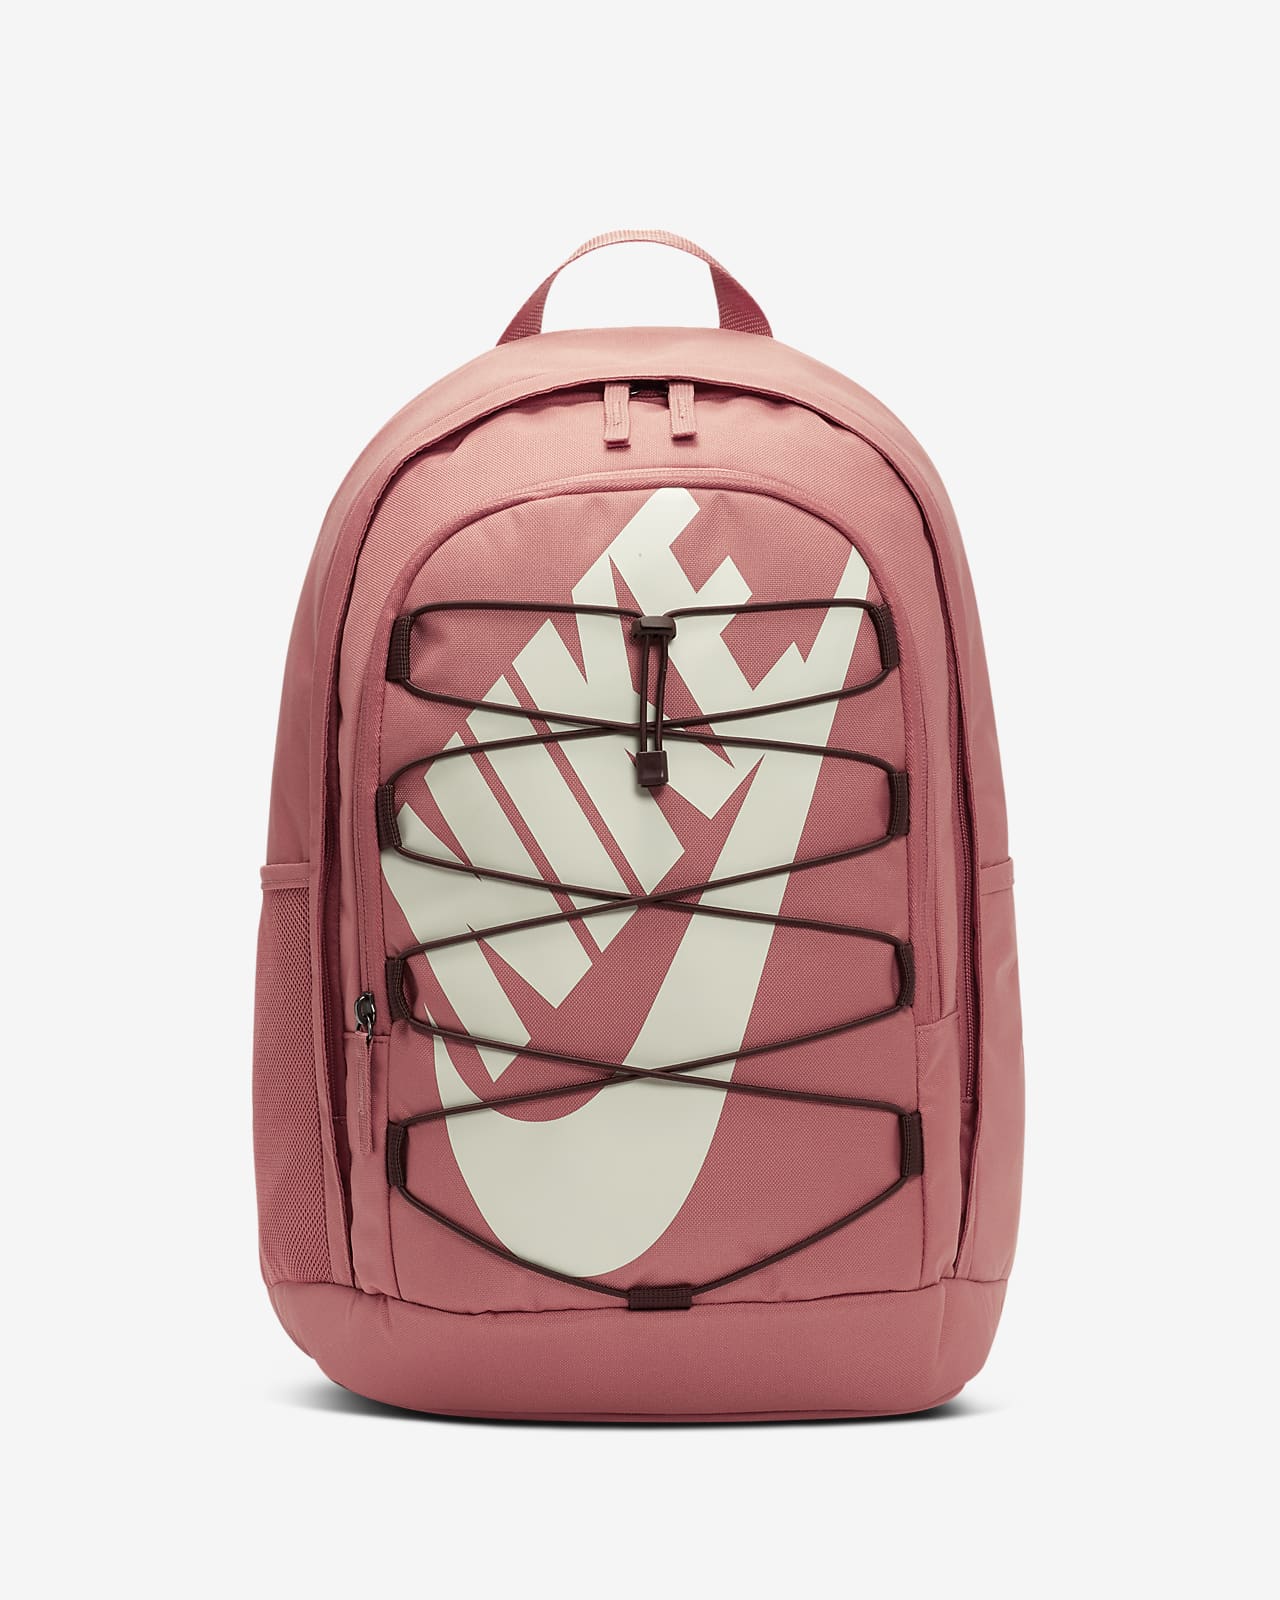 hayward backpack